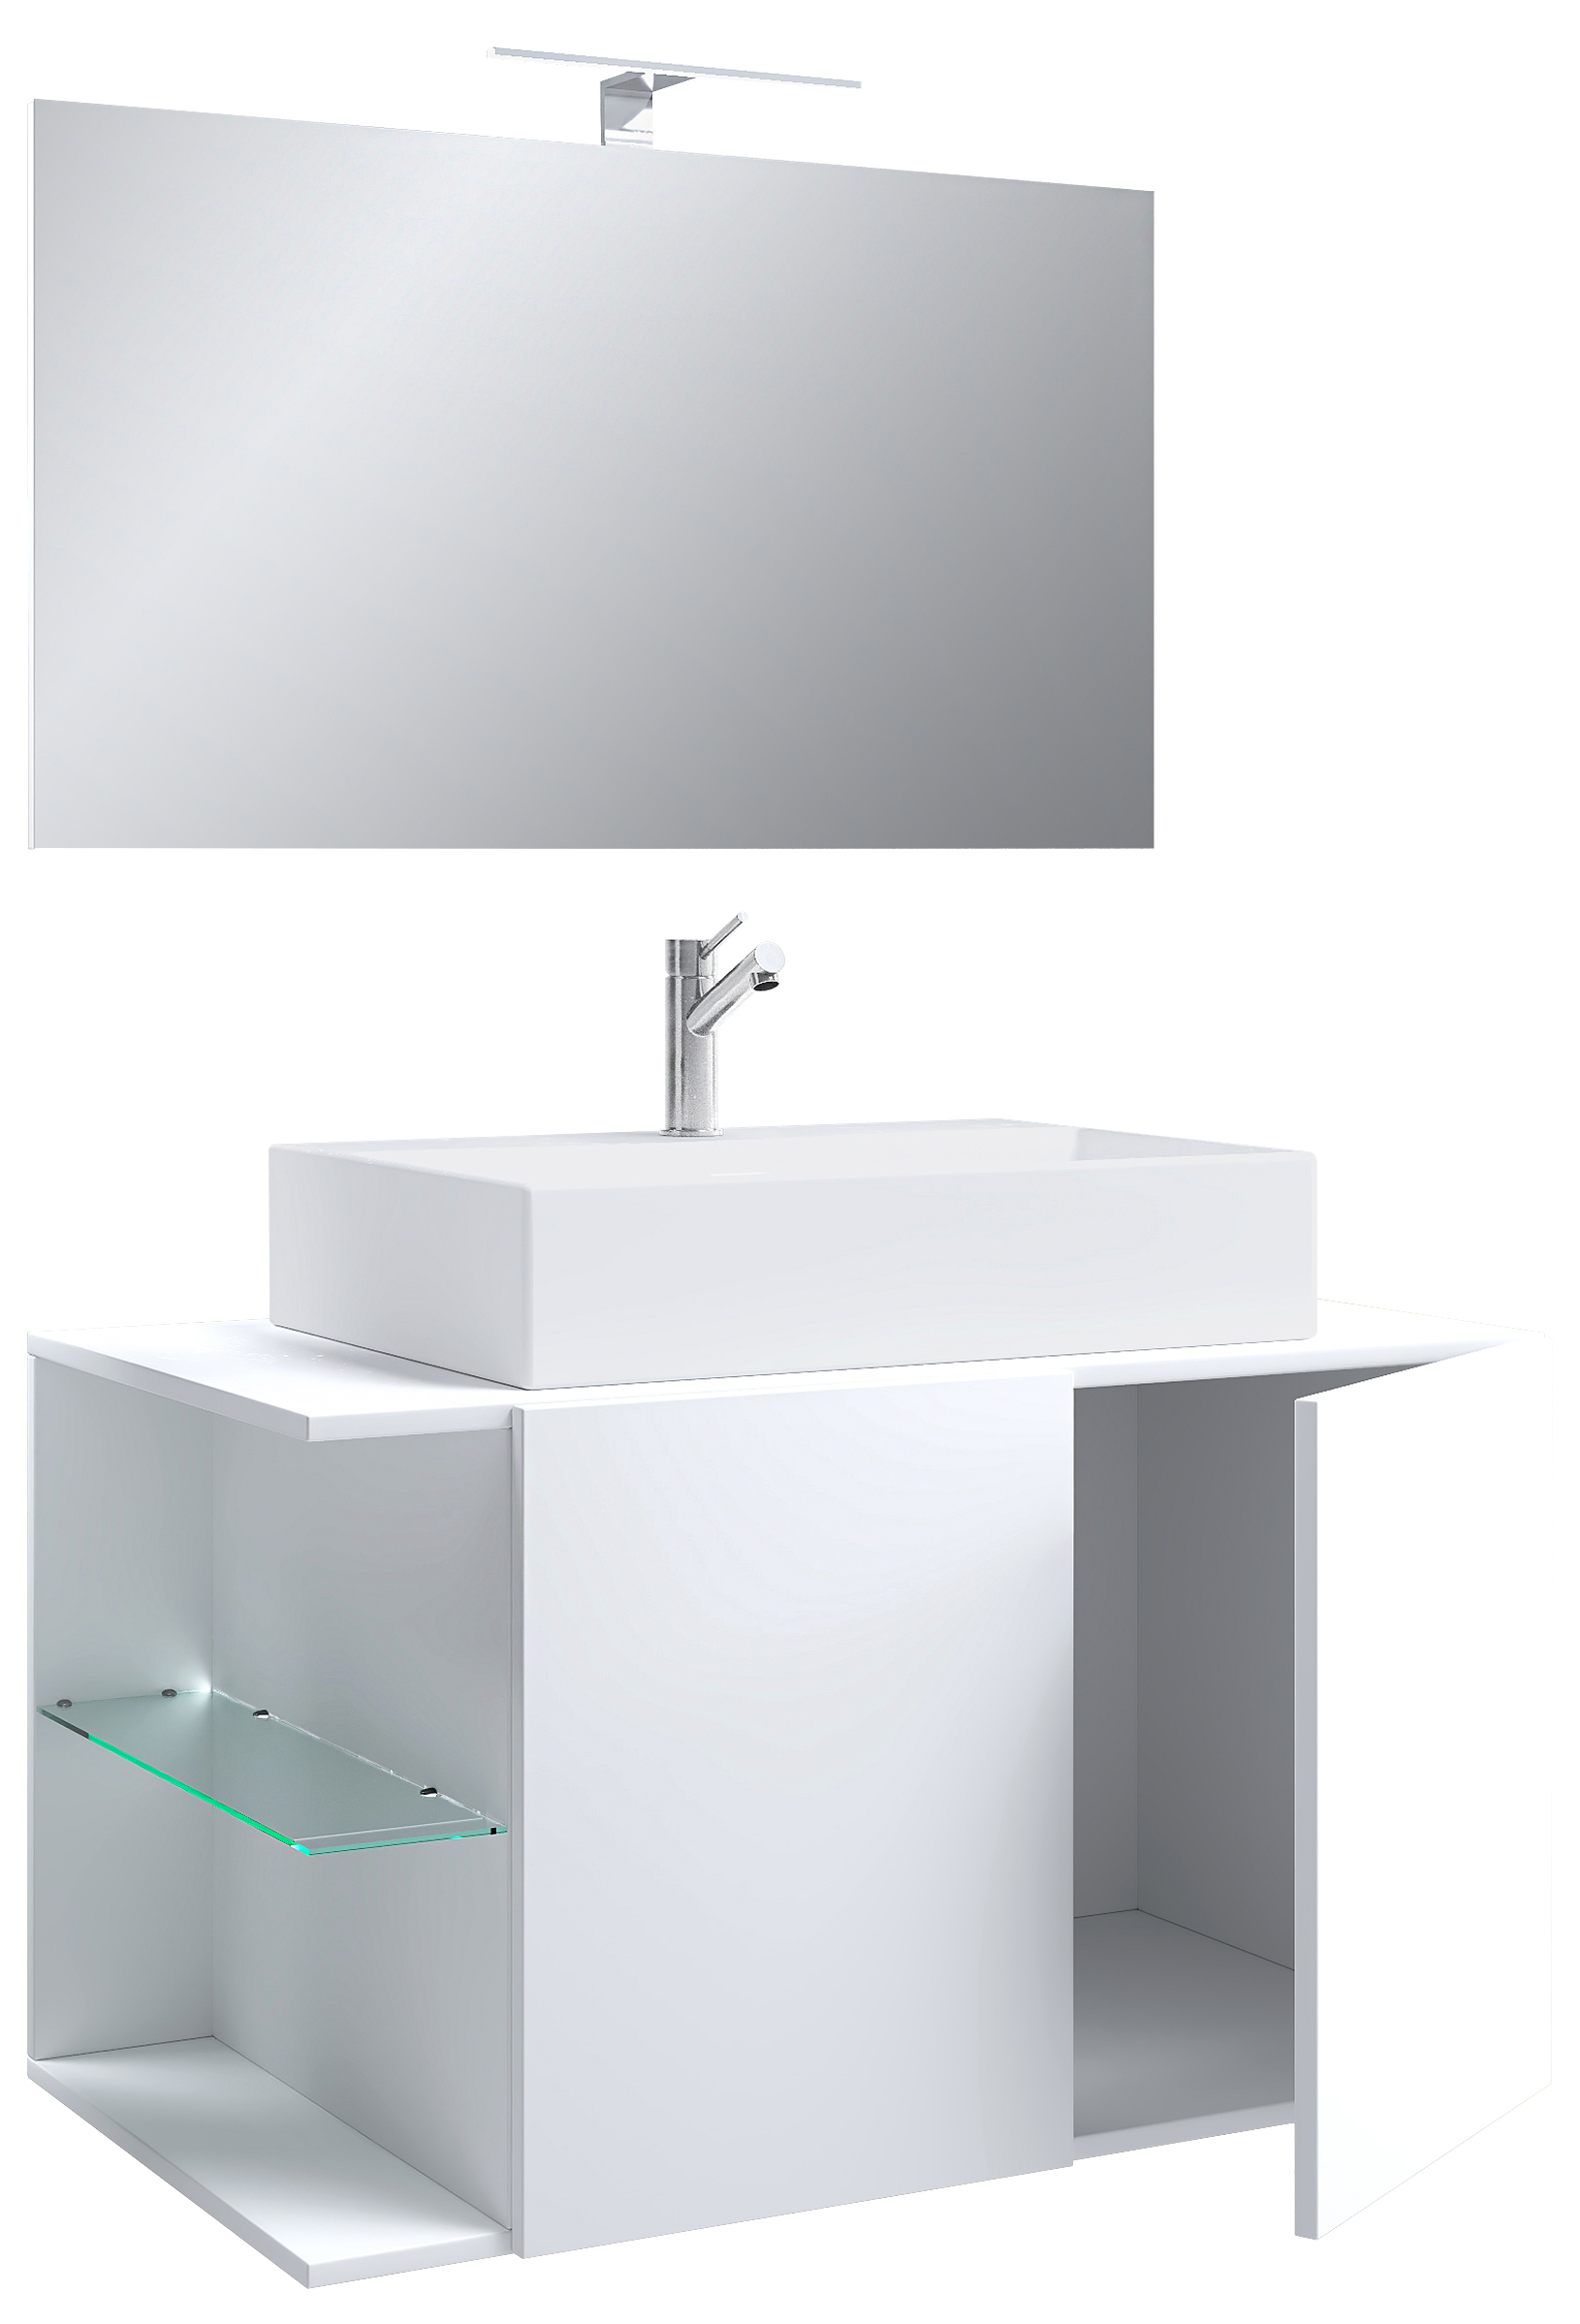 VCM NORDIC Hausa 2 døre 93 3-delt vaskeplads, m. spejl, keramik håndvask, 1 glashylde - hvid melamin